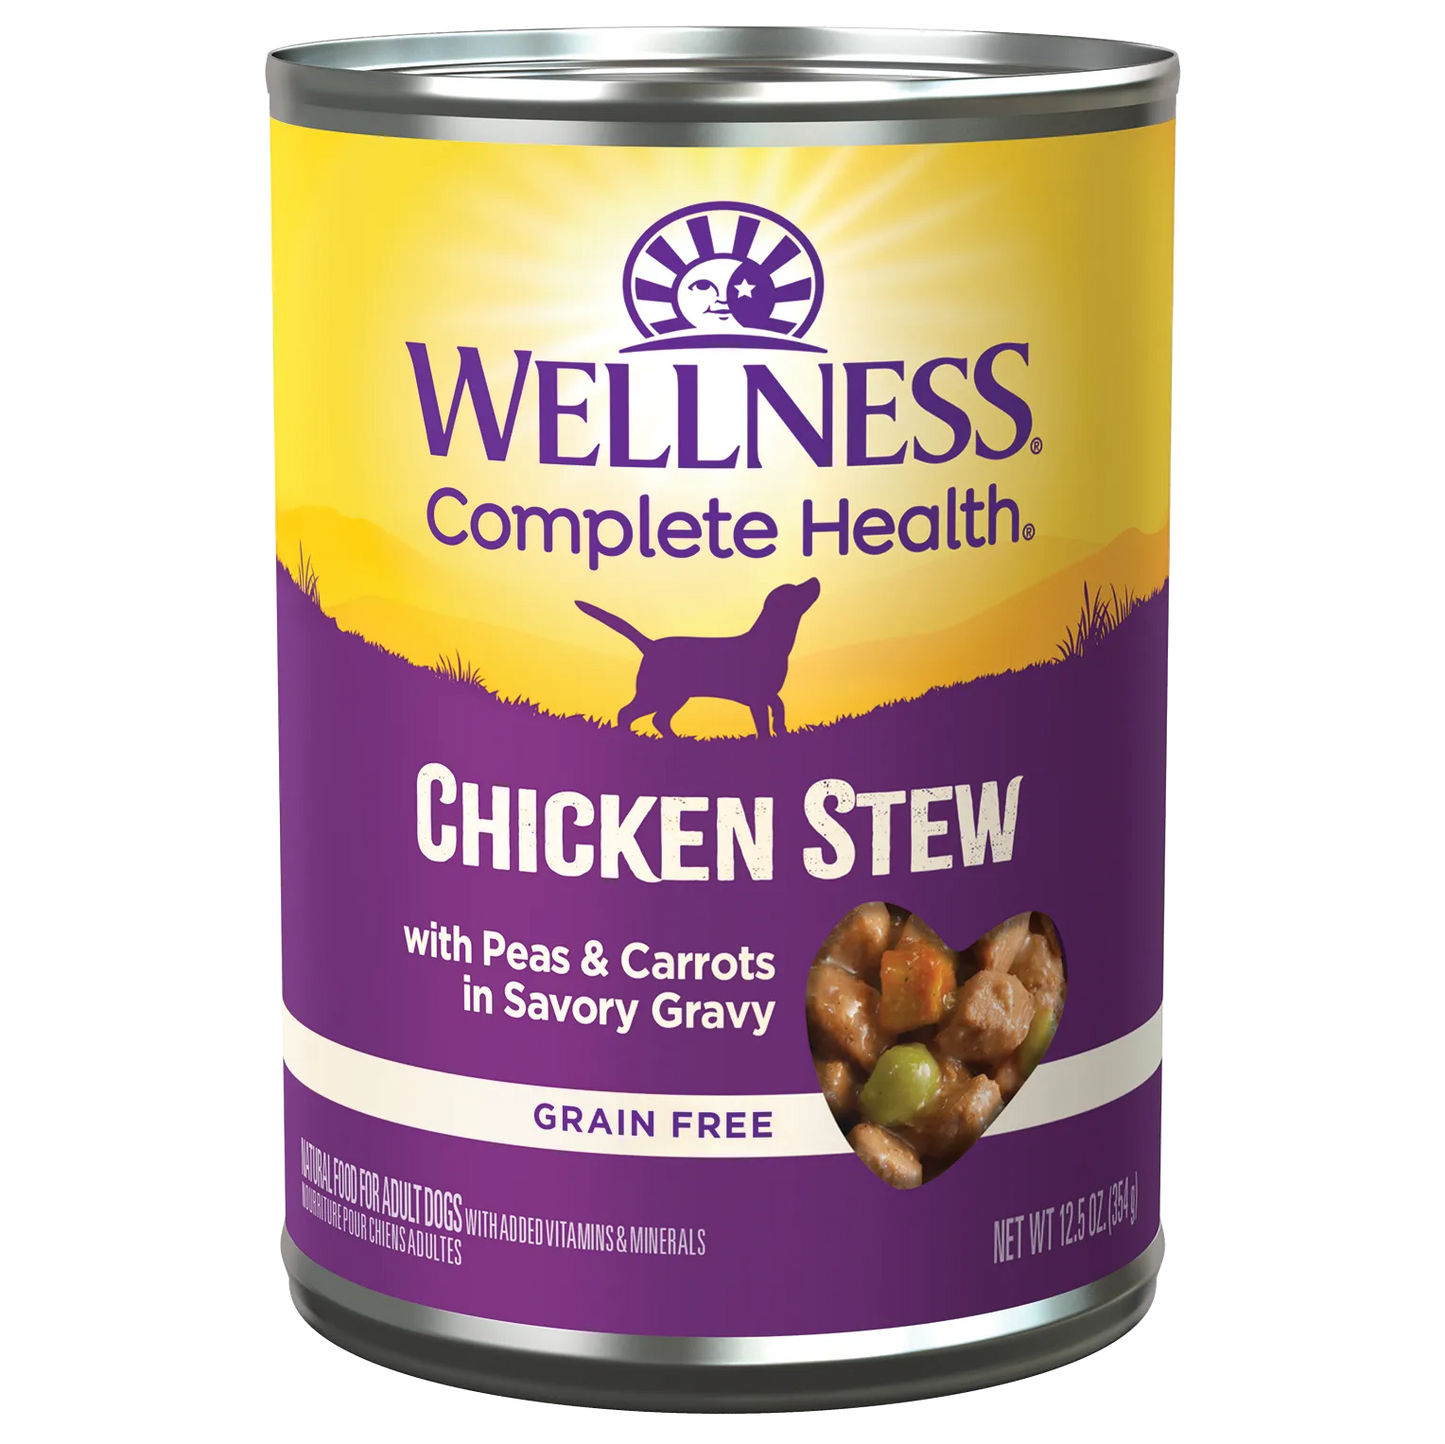 Wellness Dog - Grain Free Chicken Stew